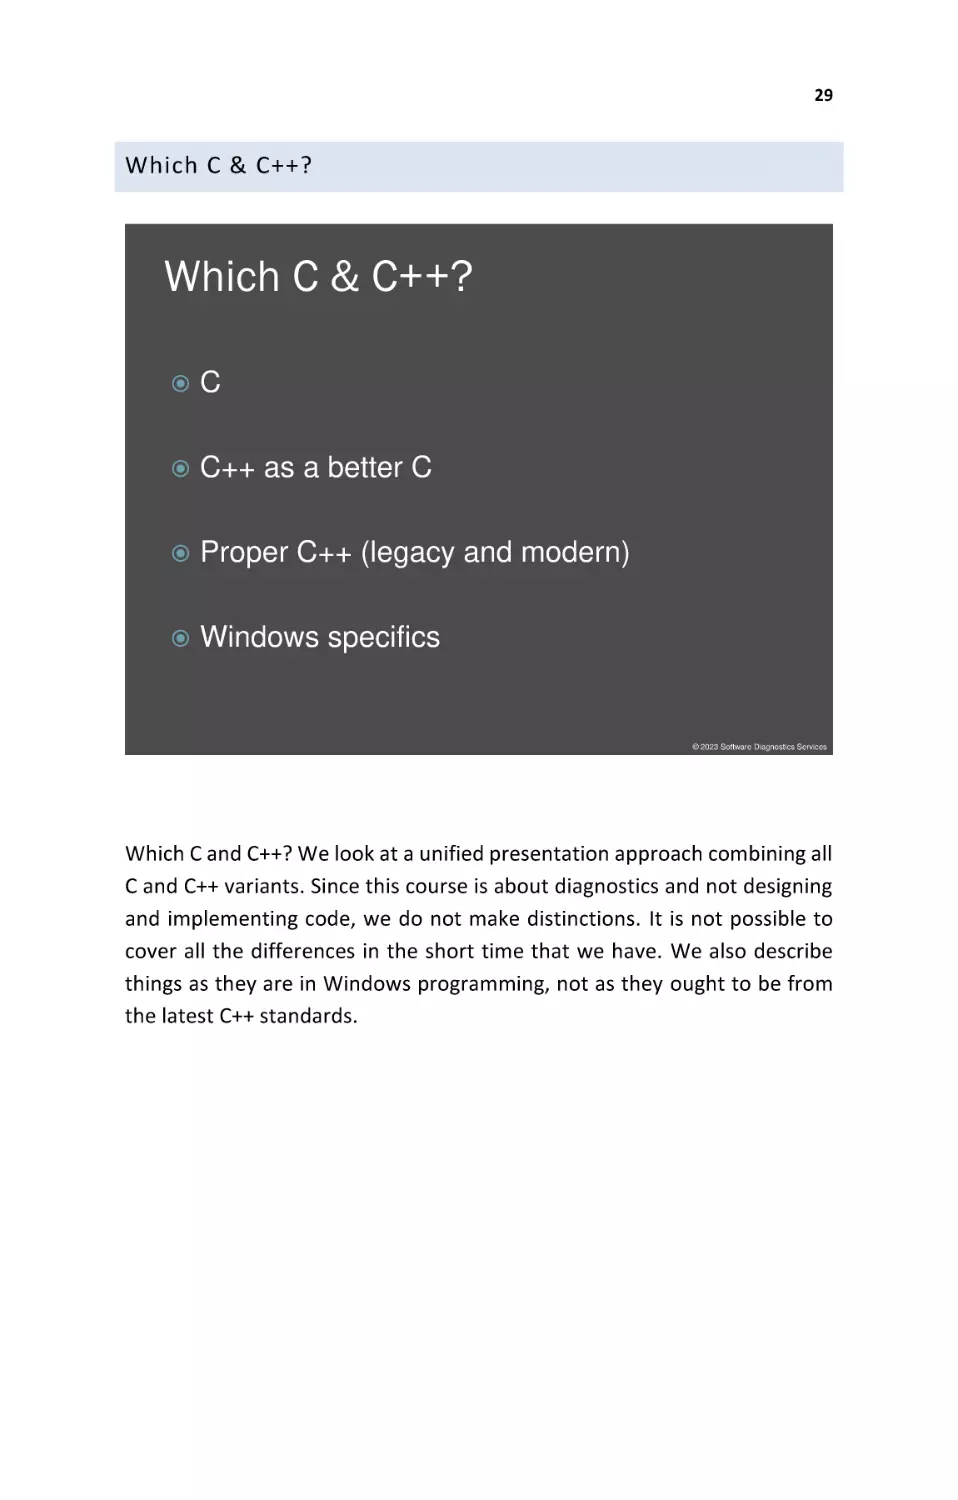 Which C & C++?